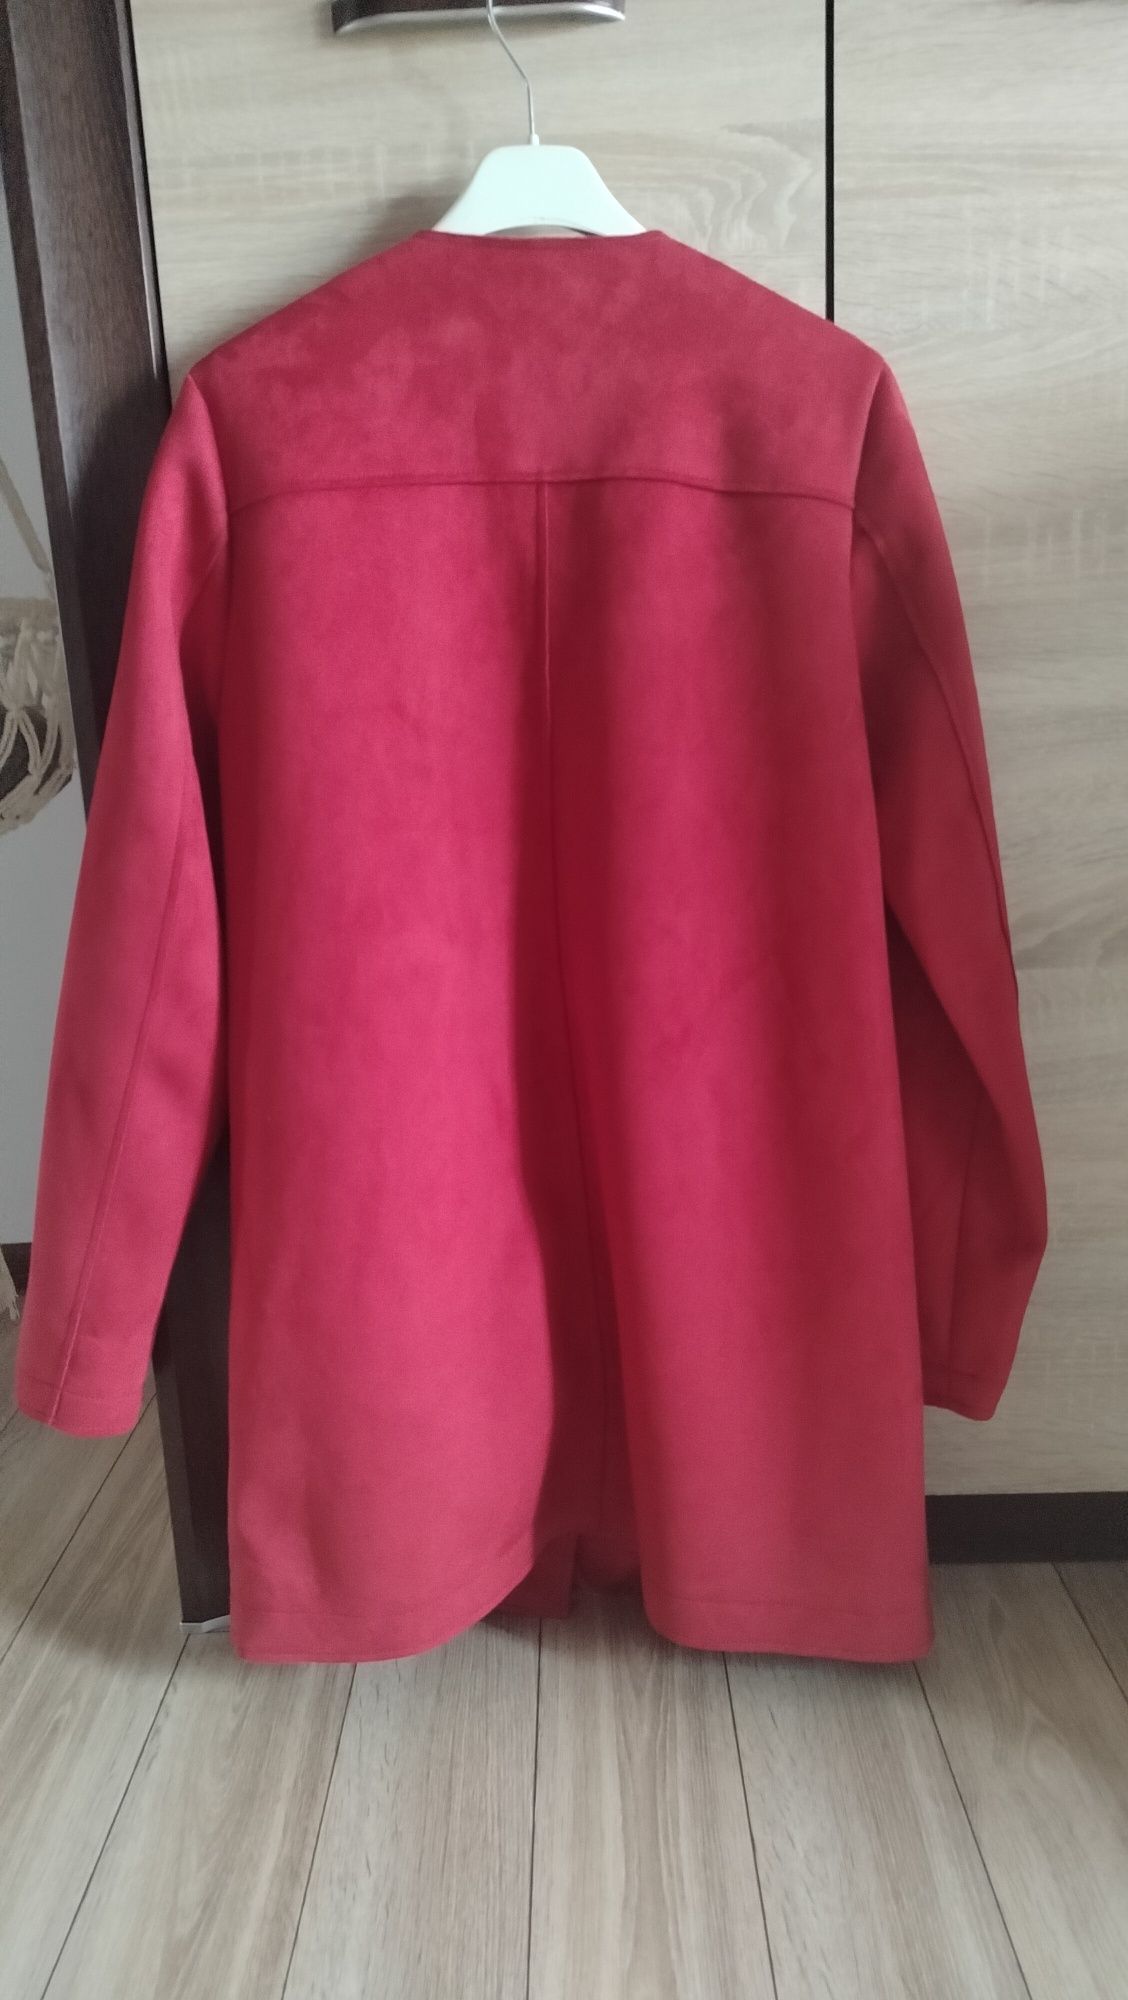 Czerwony burgrundowy płaszcz długi zamszowy cienki zapinany na zatrzas